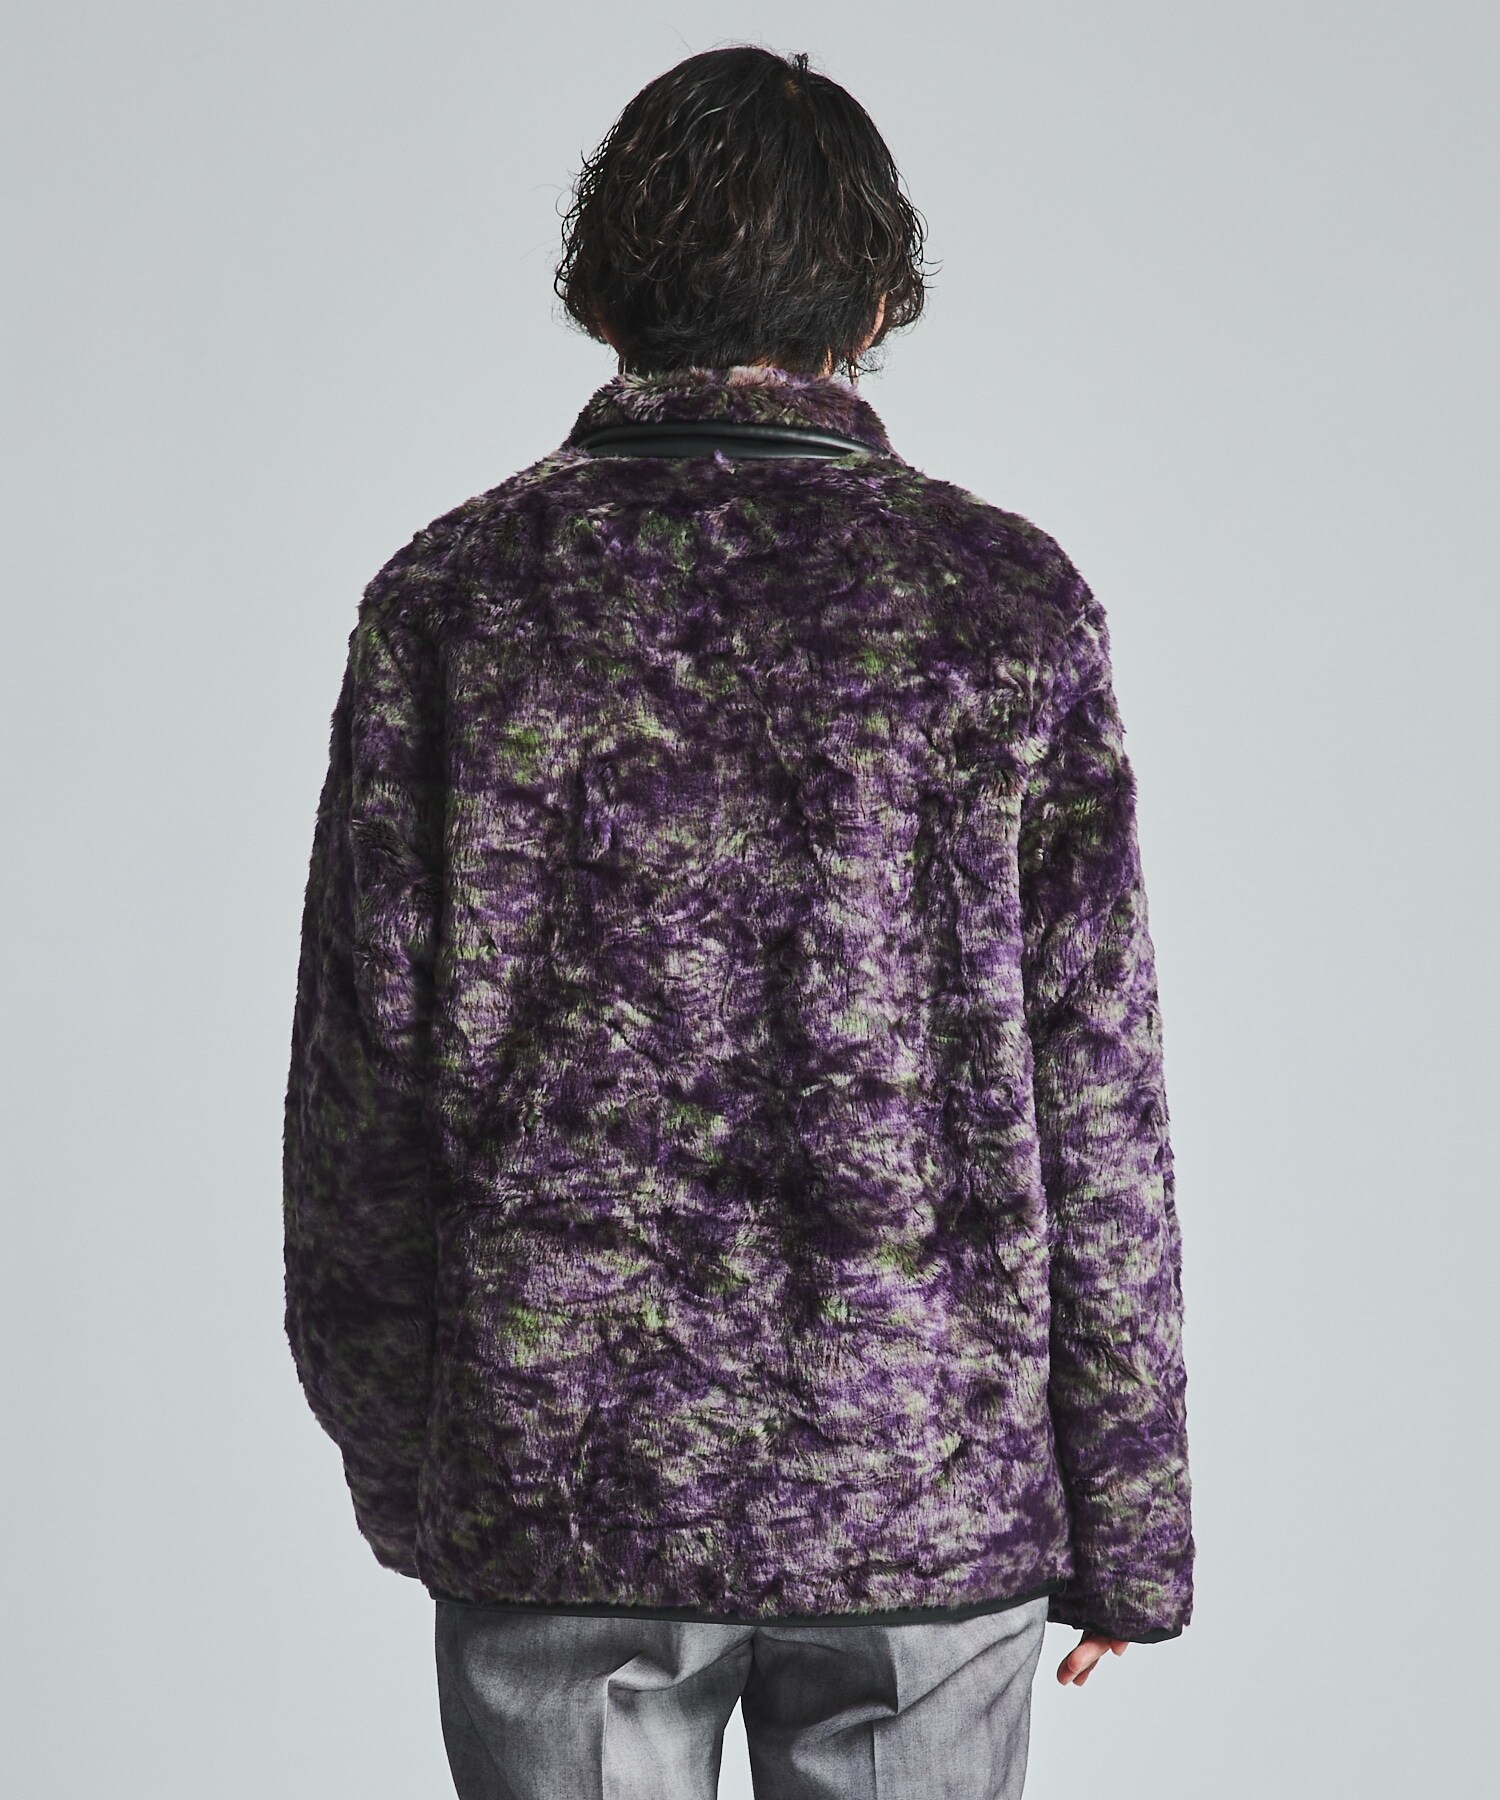 Fur Jacket - Faux Fur / Uneven Printed NEEDLES